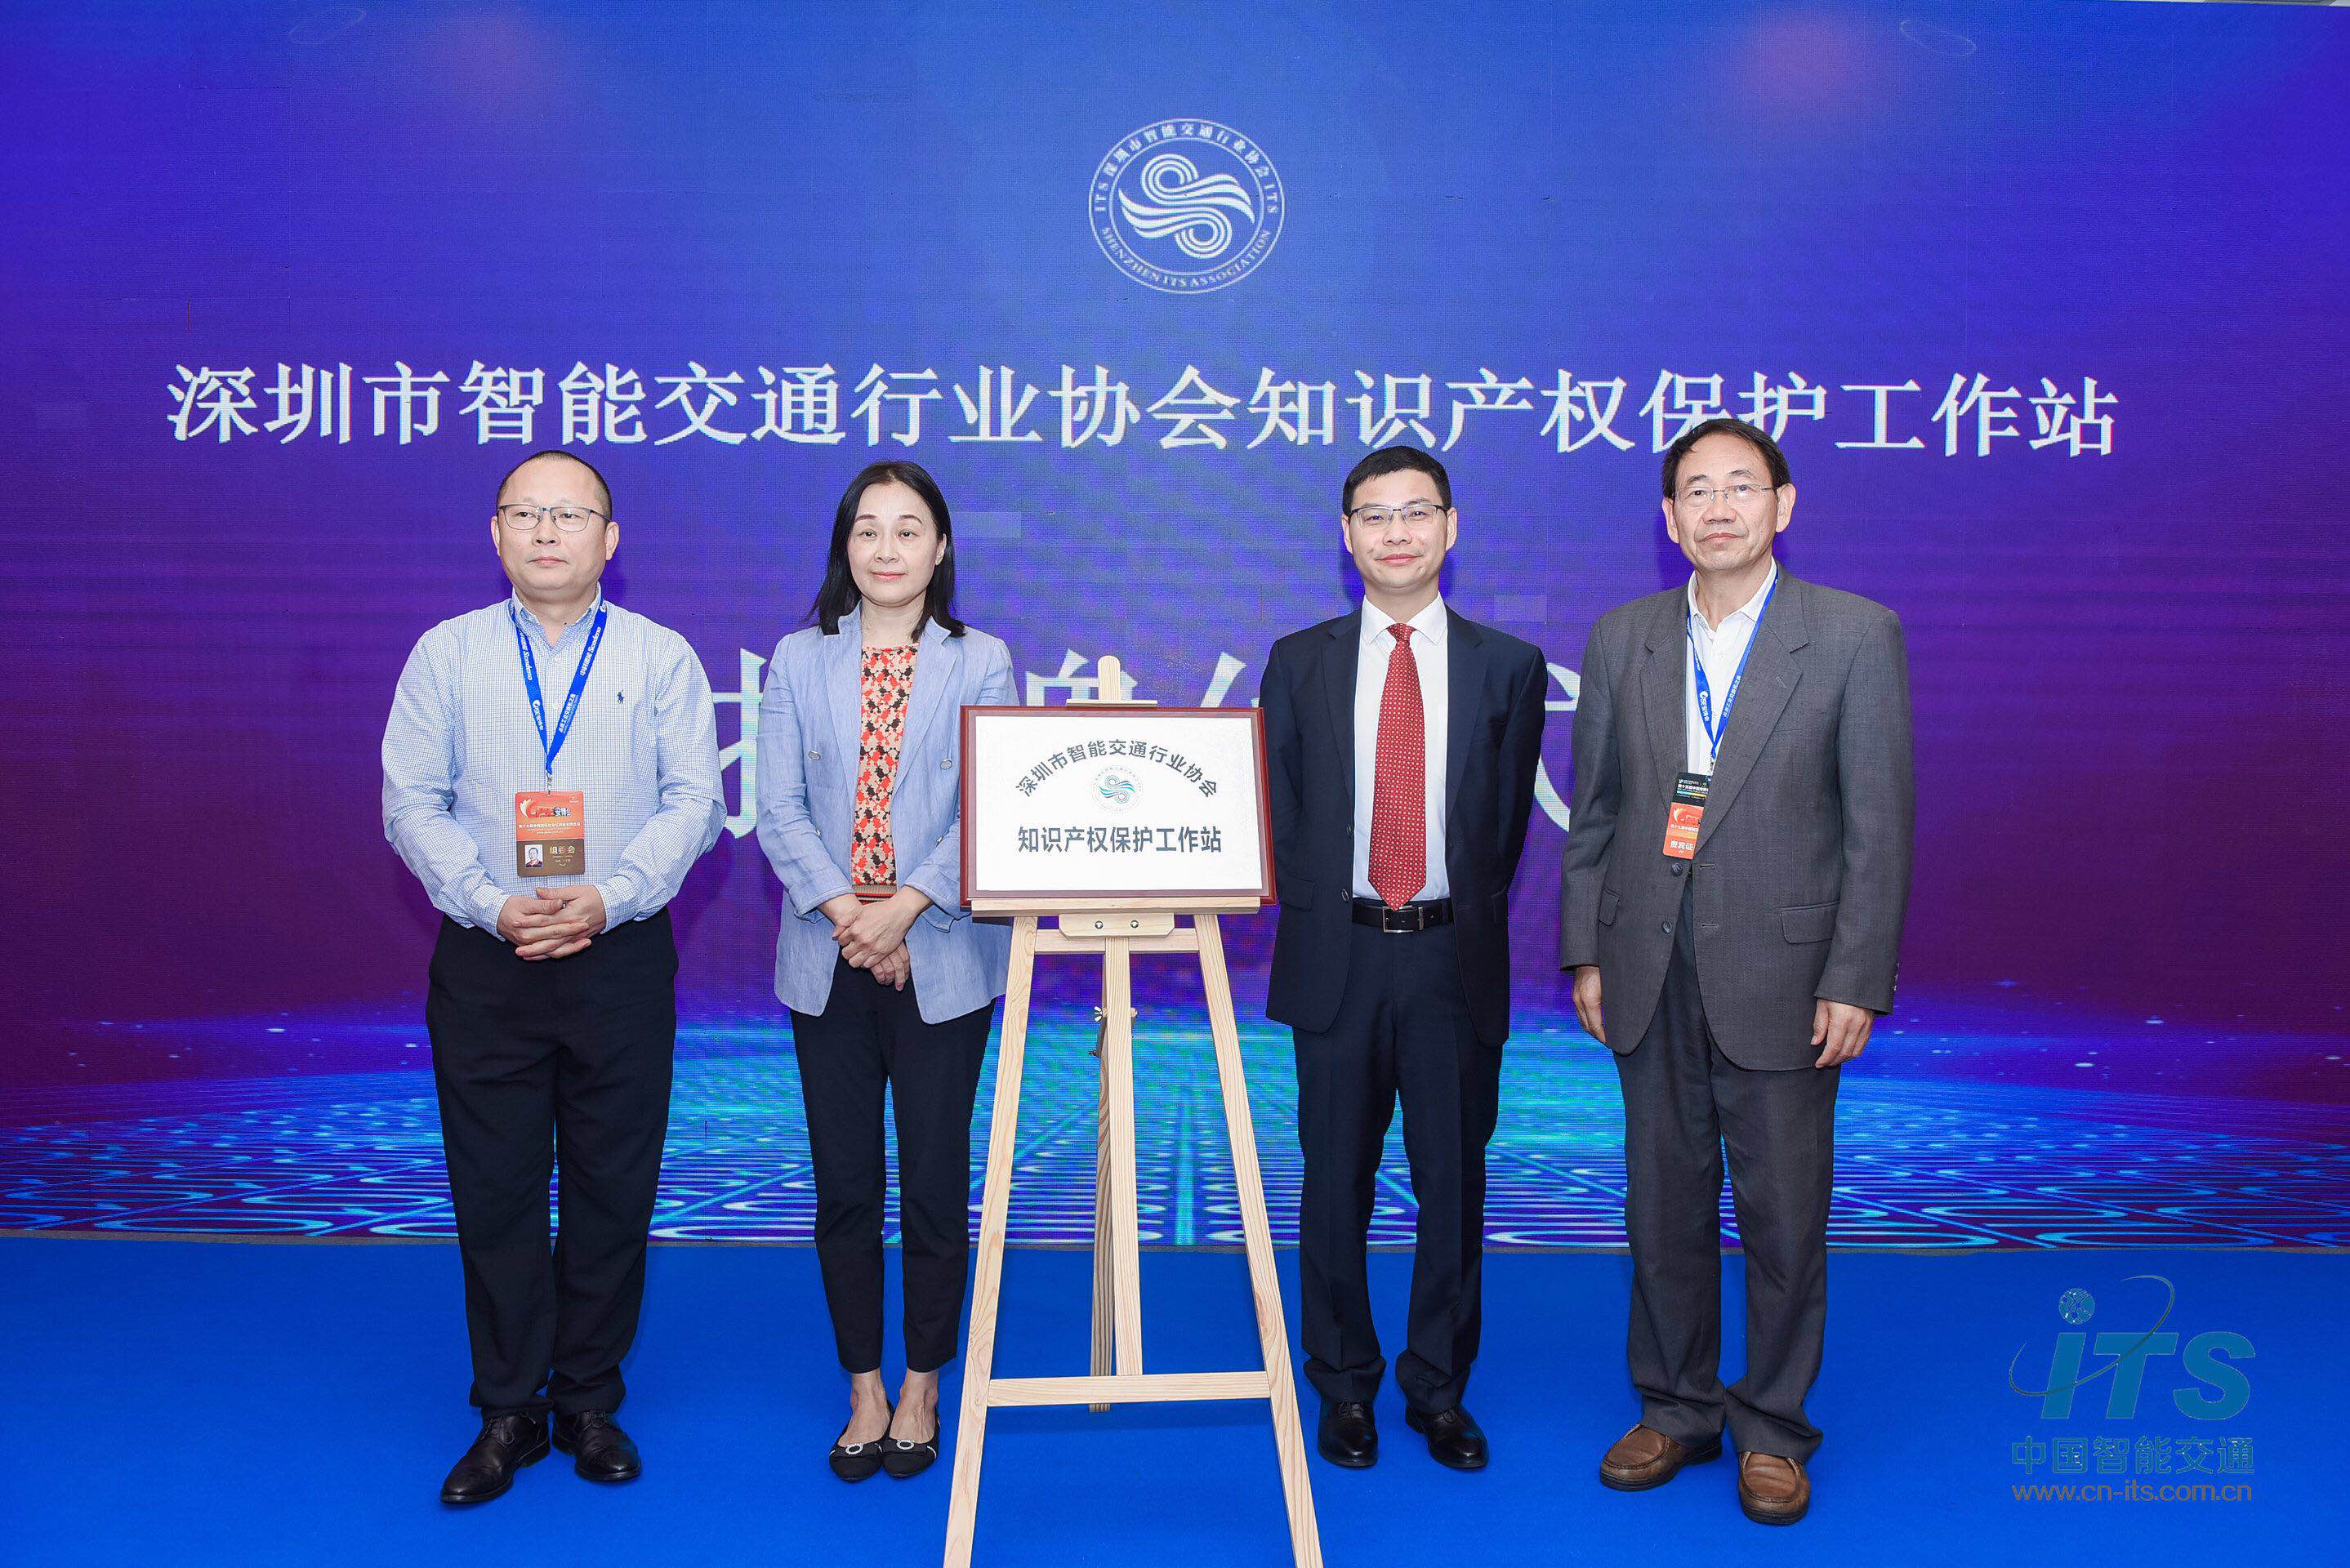 全国首个智能交通行业知识产权保护工作站在深圳成立